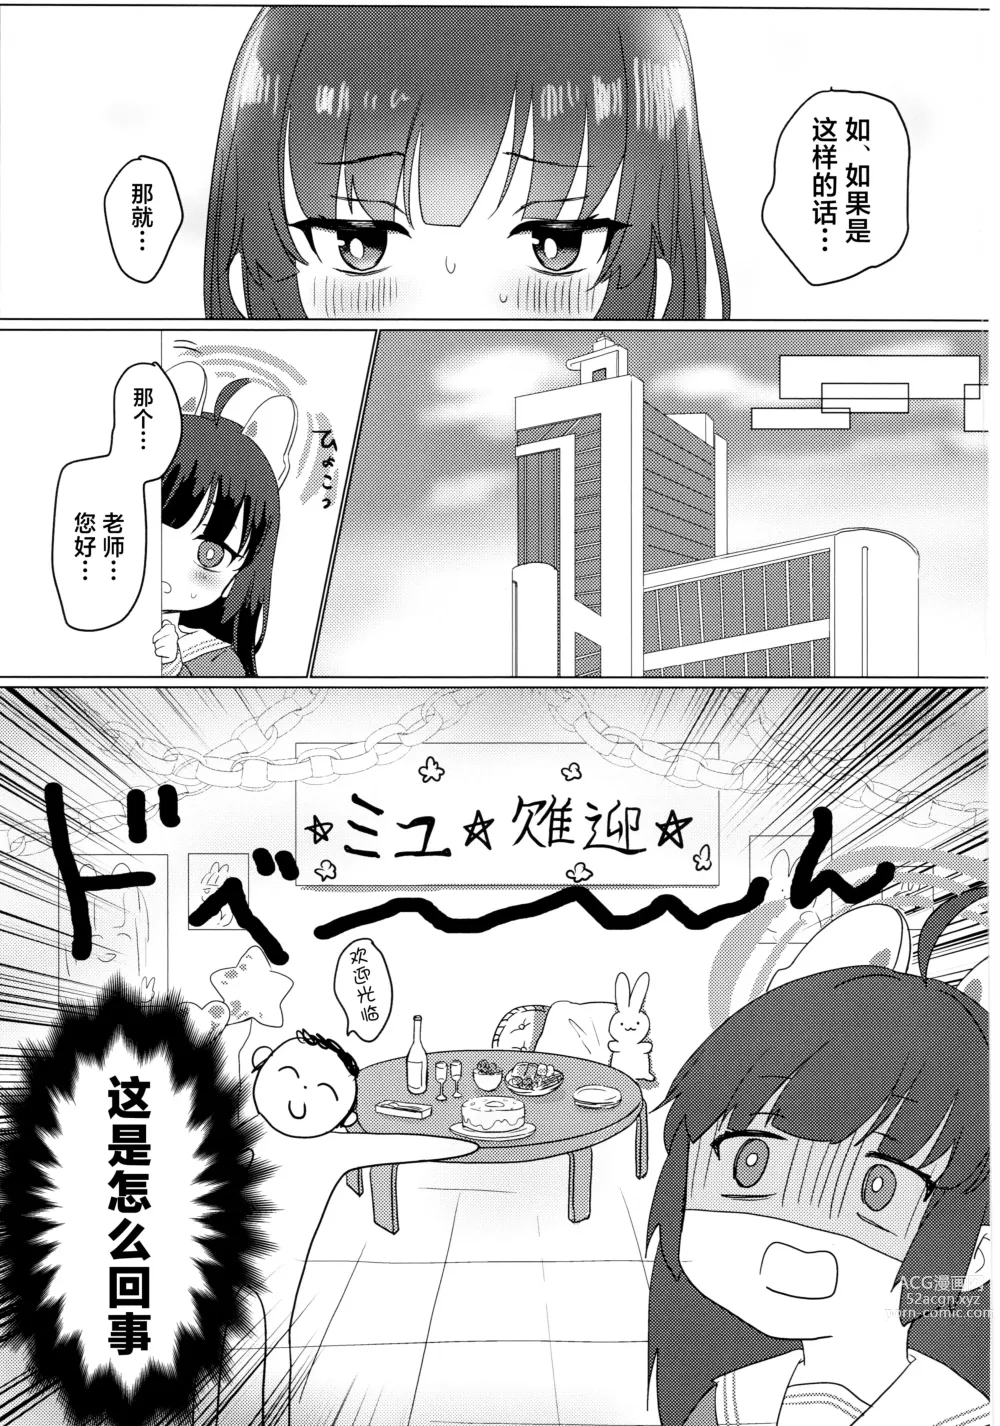 Page 4 of doujinshi Kasumizawa Miyu o Amayakashitai!